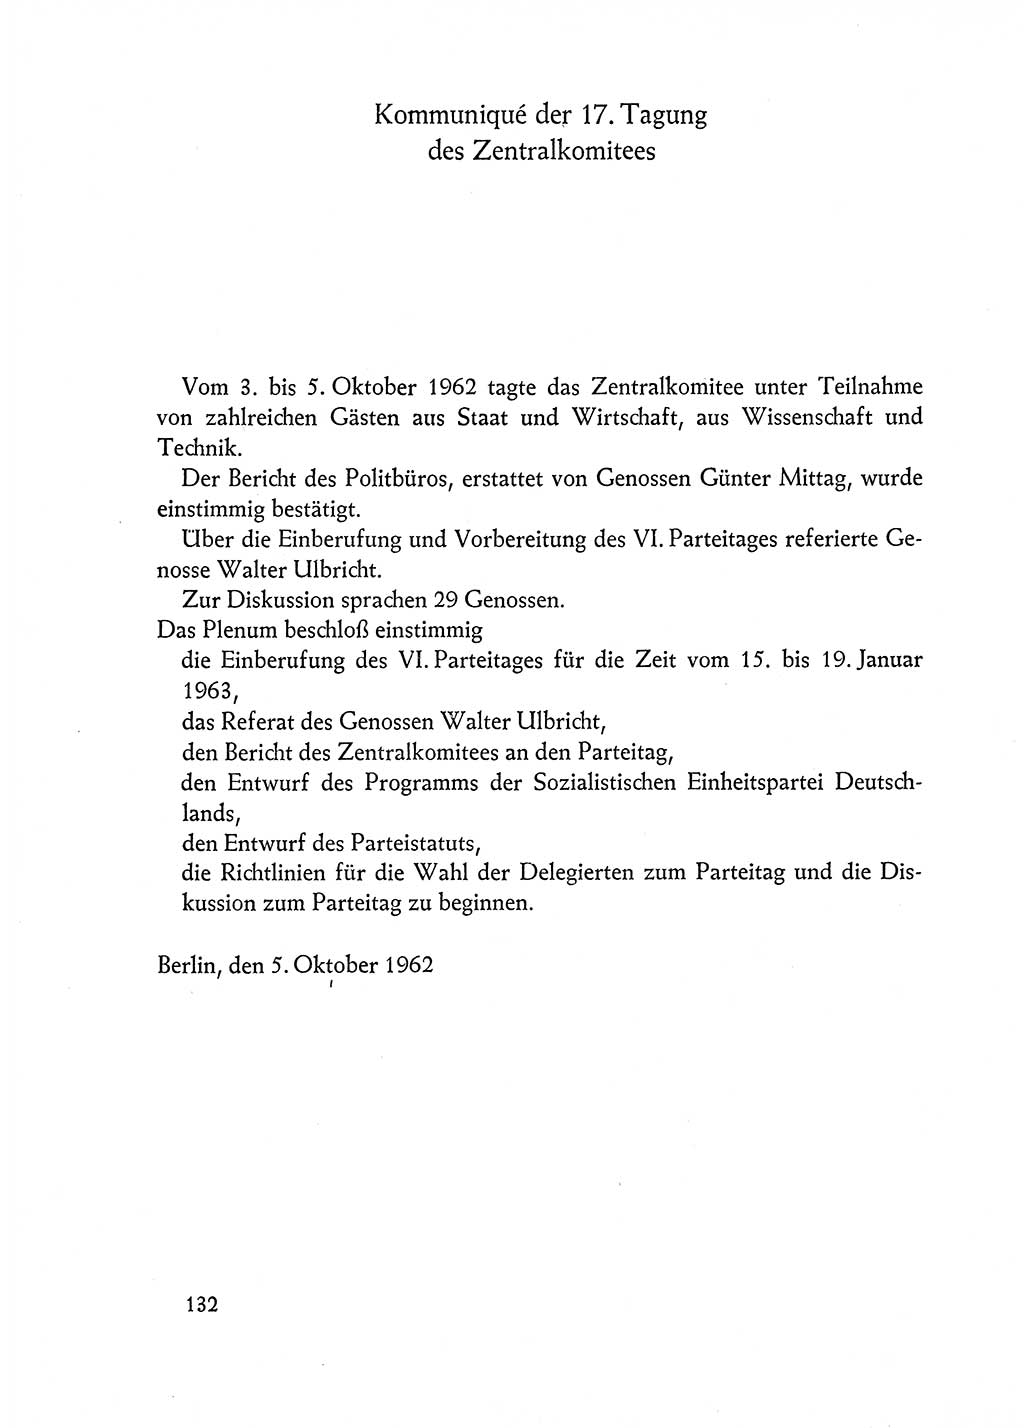 Dokumente der Sozialistischen Einheitspartei Deutschlands (SED) [Deutsche Demokratische Republik (DDR)] 1962-1963, Seite 132 (Dok. SED DDR 1962-1963, S. 132)